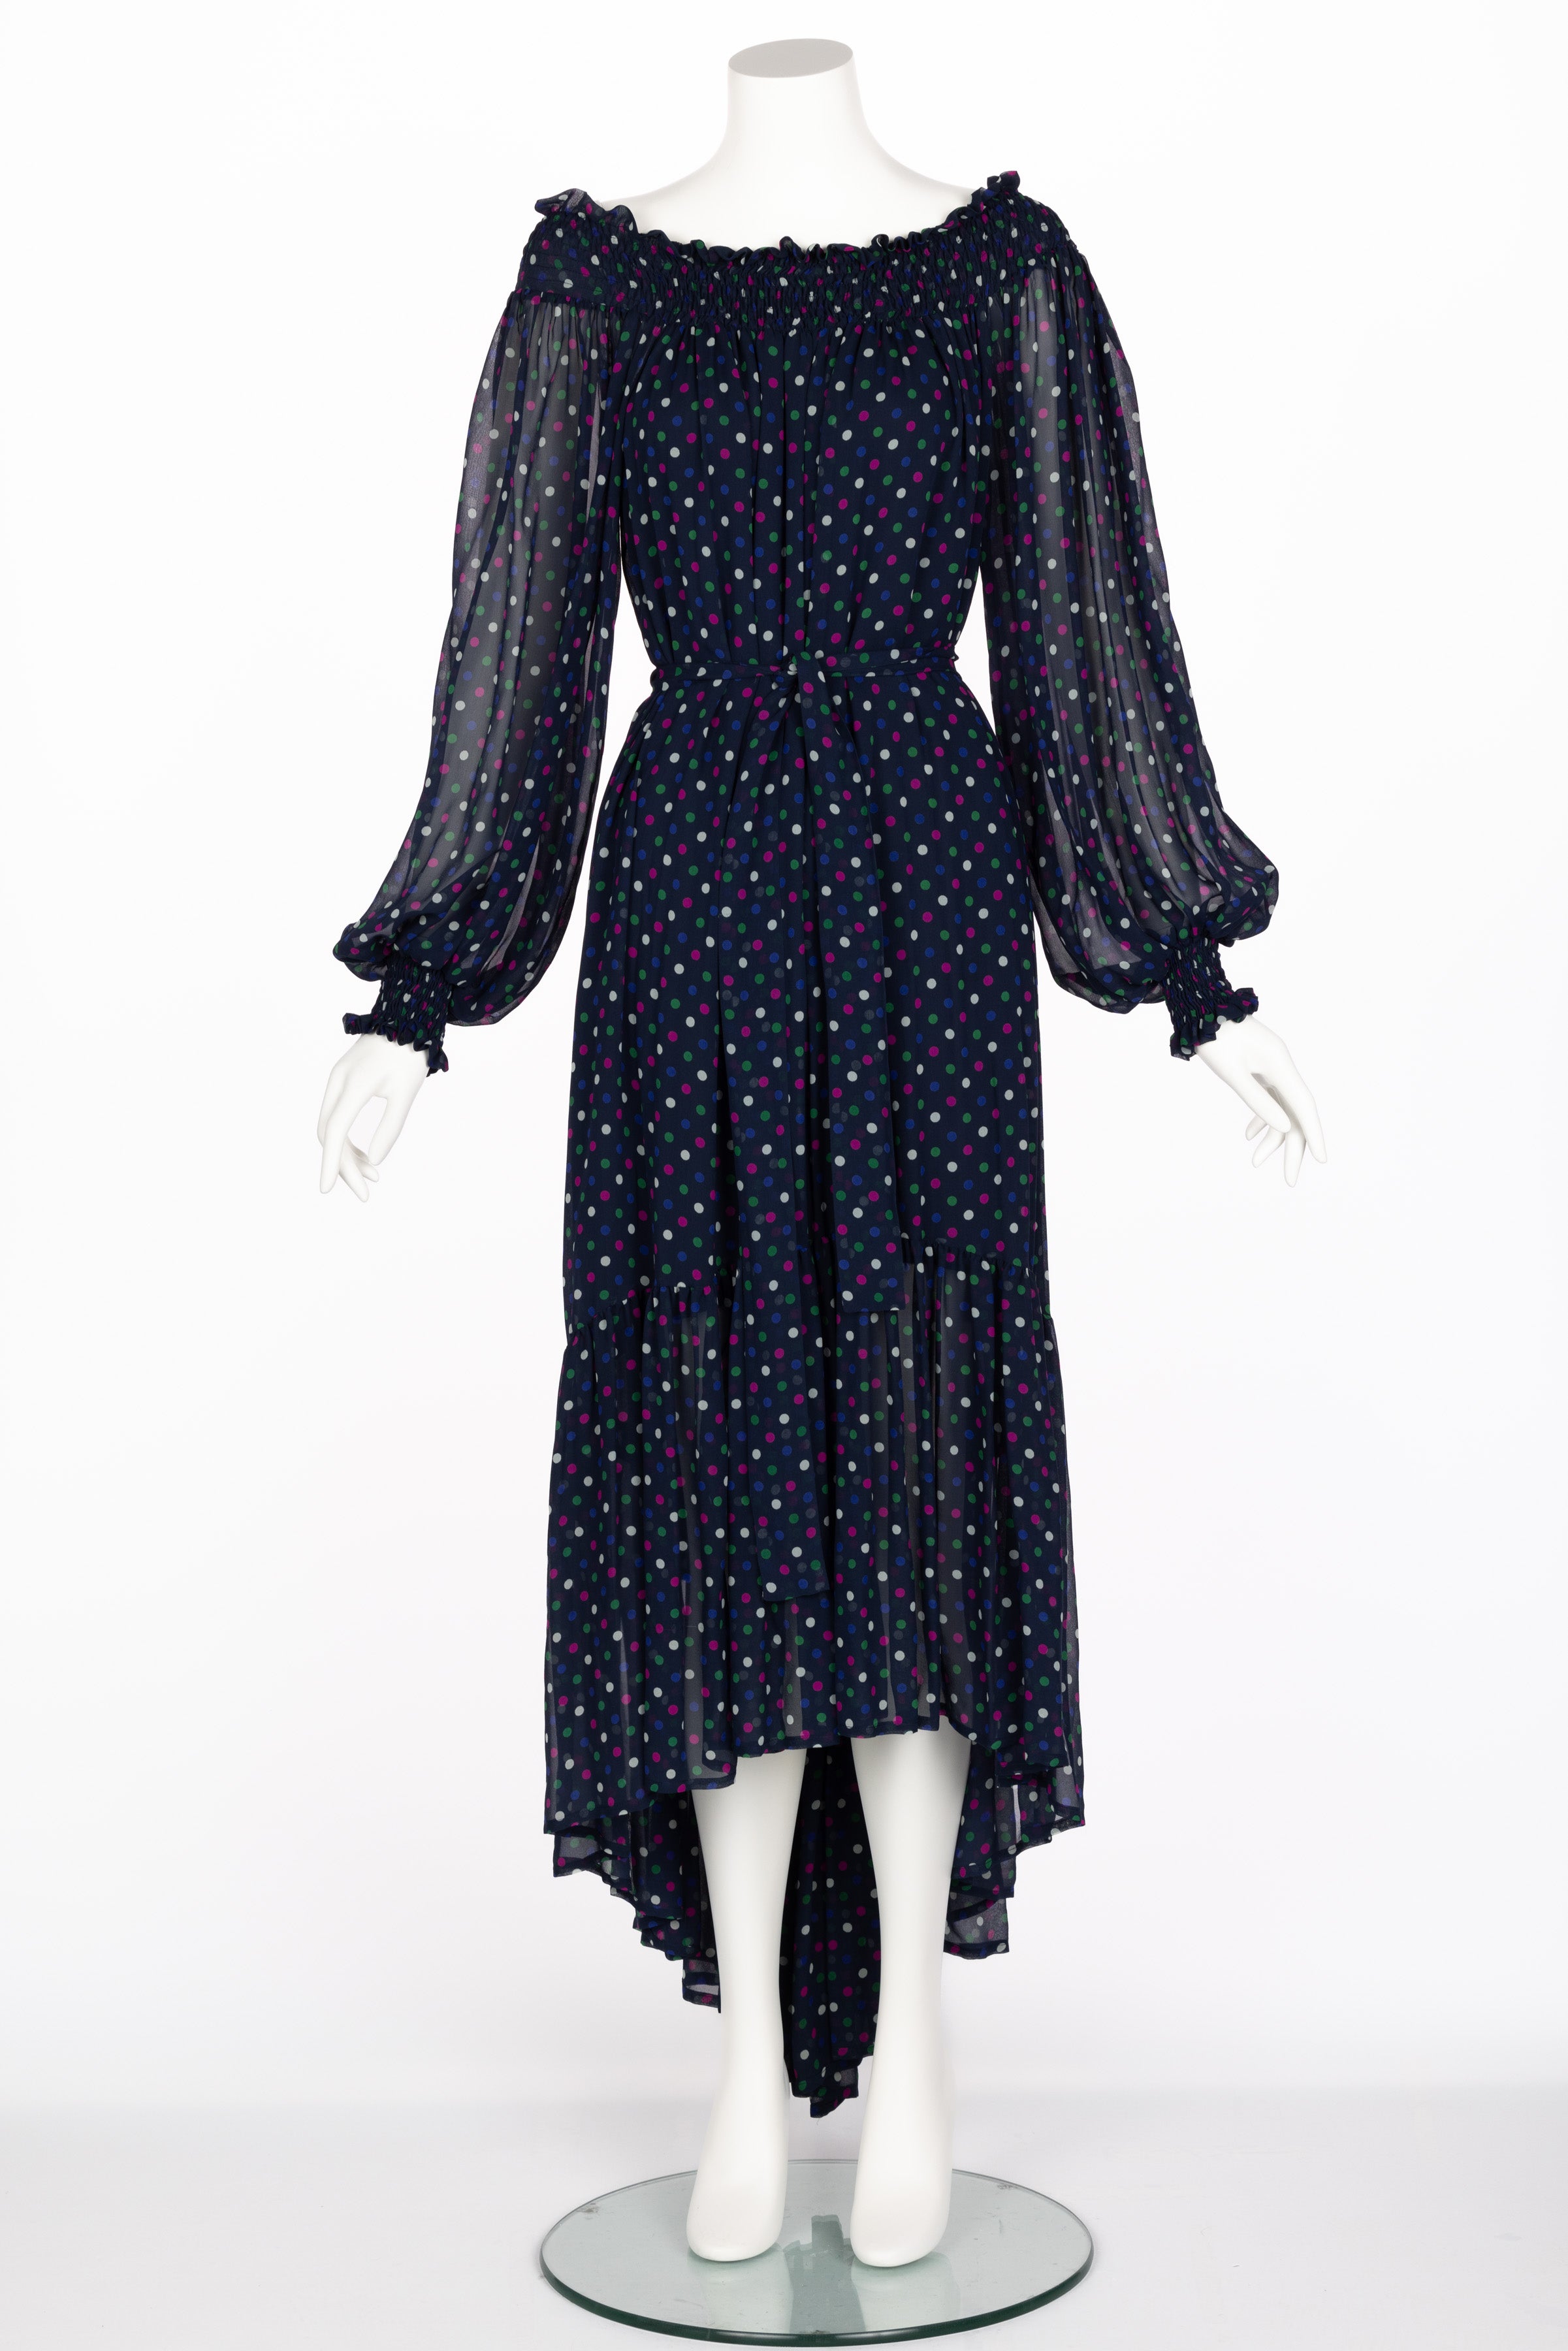 Black Saint Laurent Blue Polka Dot Off Shoulder Silk Dress YSL 1970s For Sale